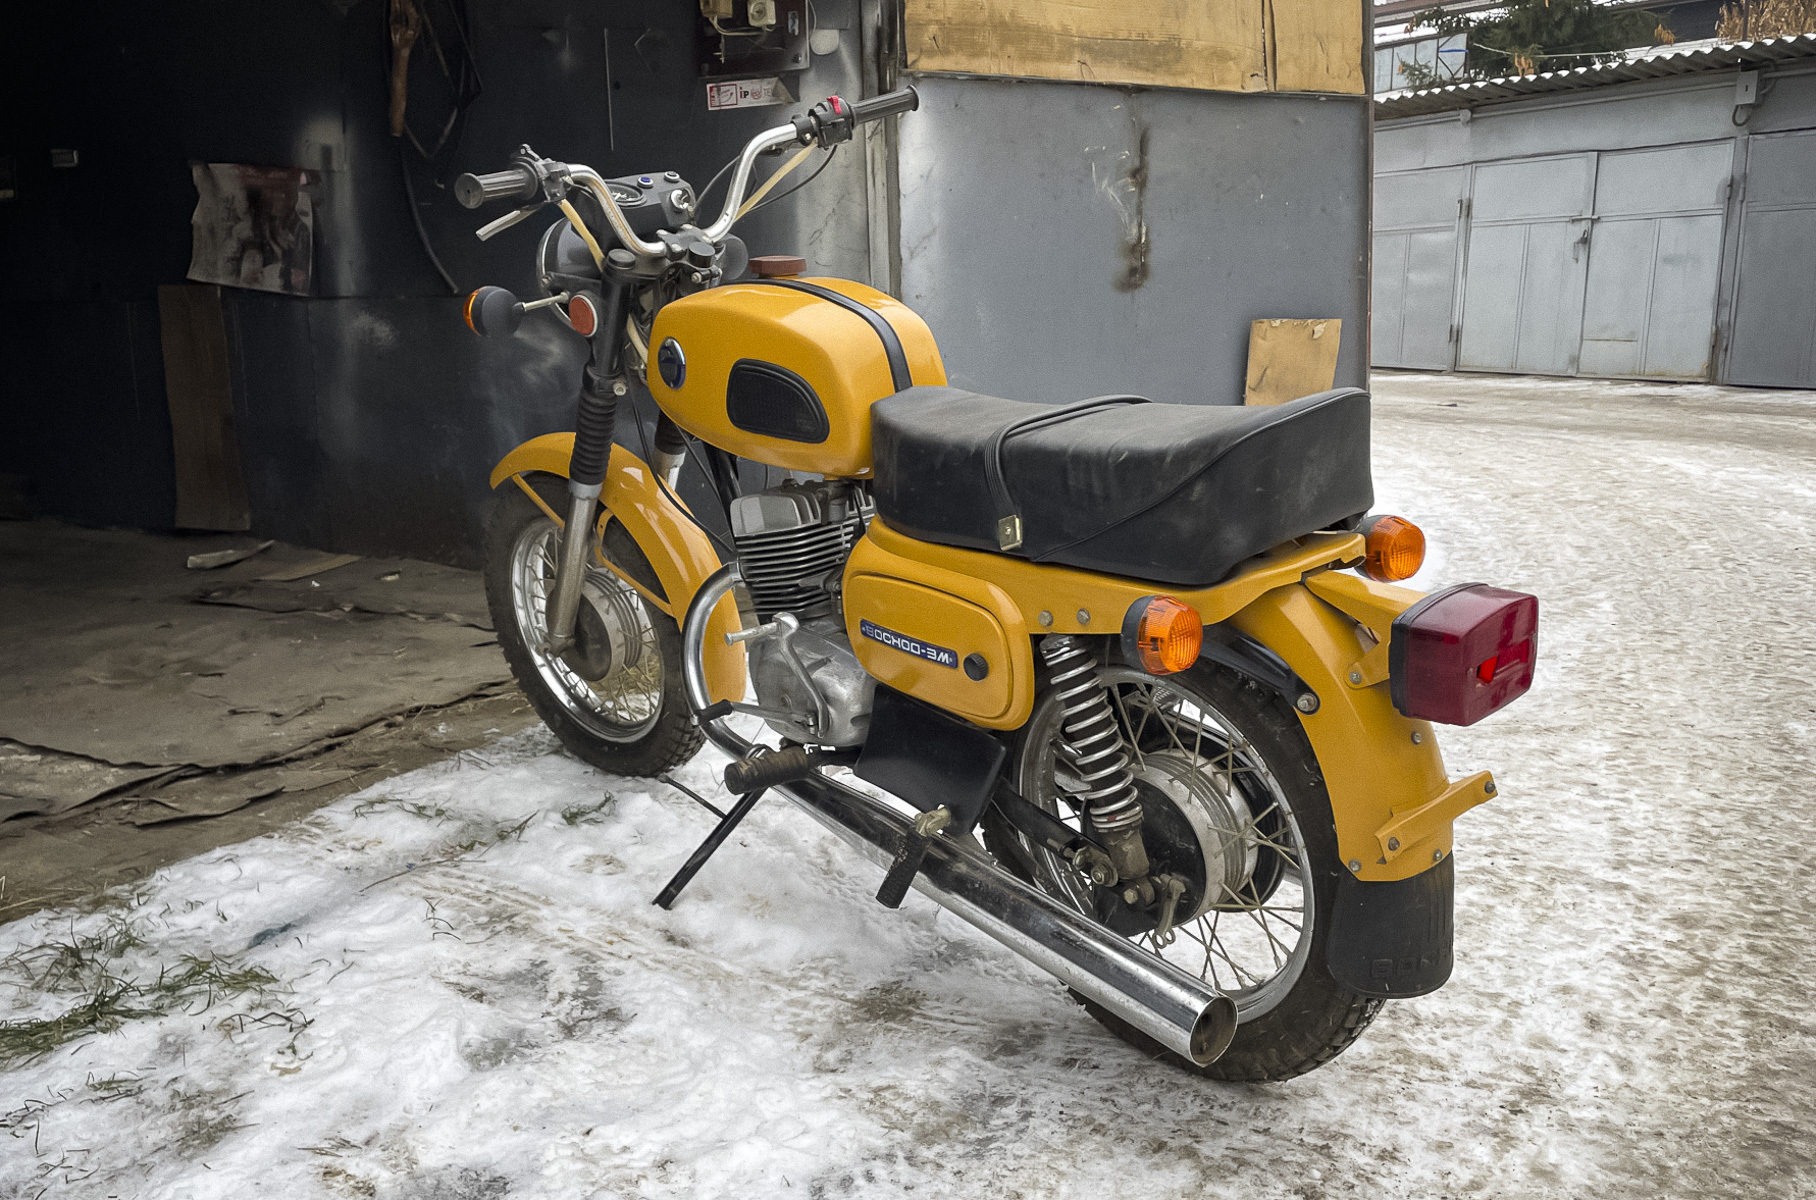 В гараже нашли новый мотоцикл «Восход». Это последняя «капсула времени» в уходящем году